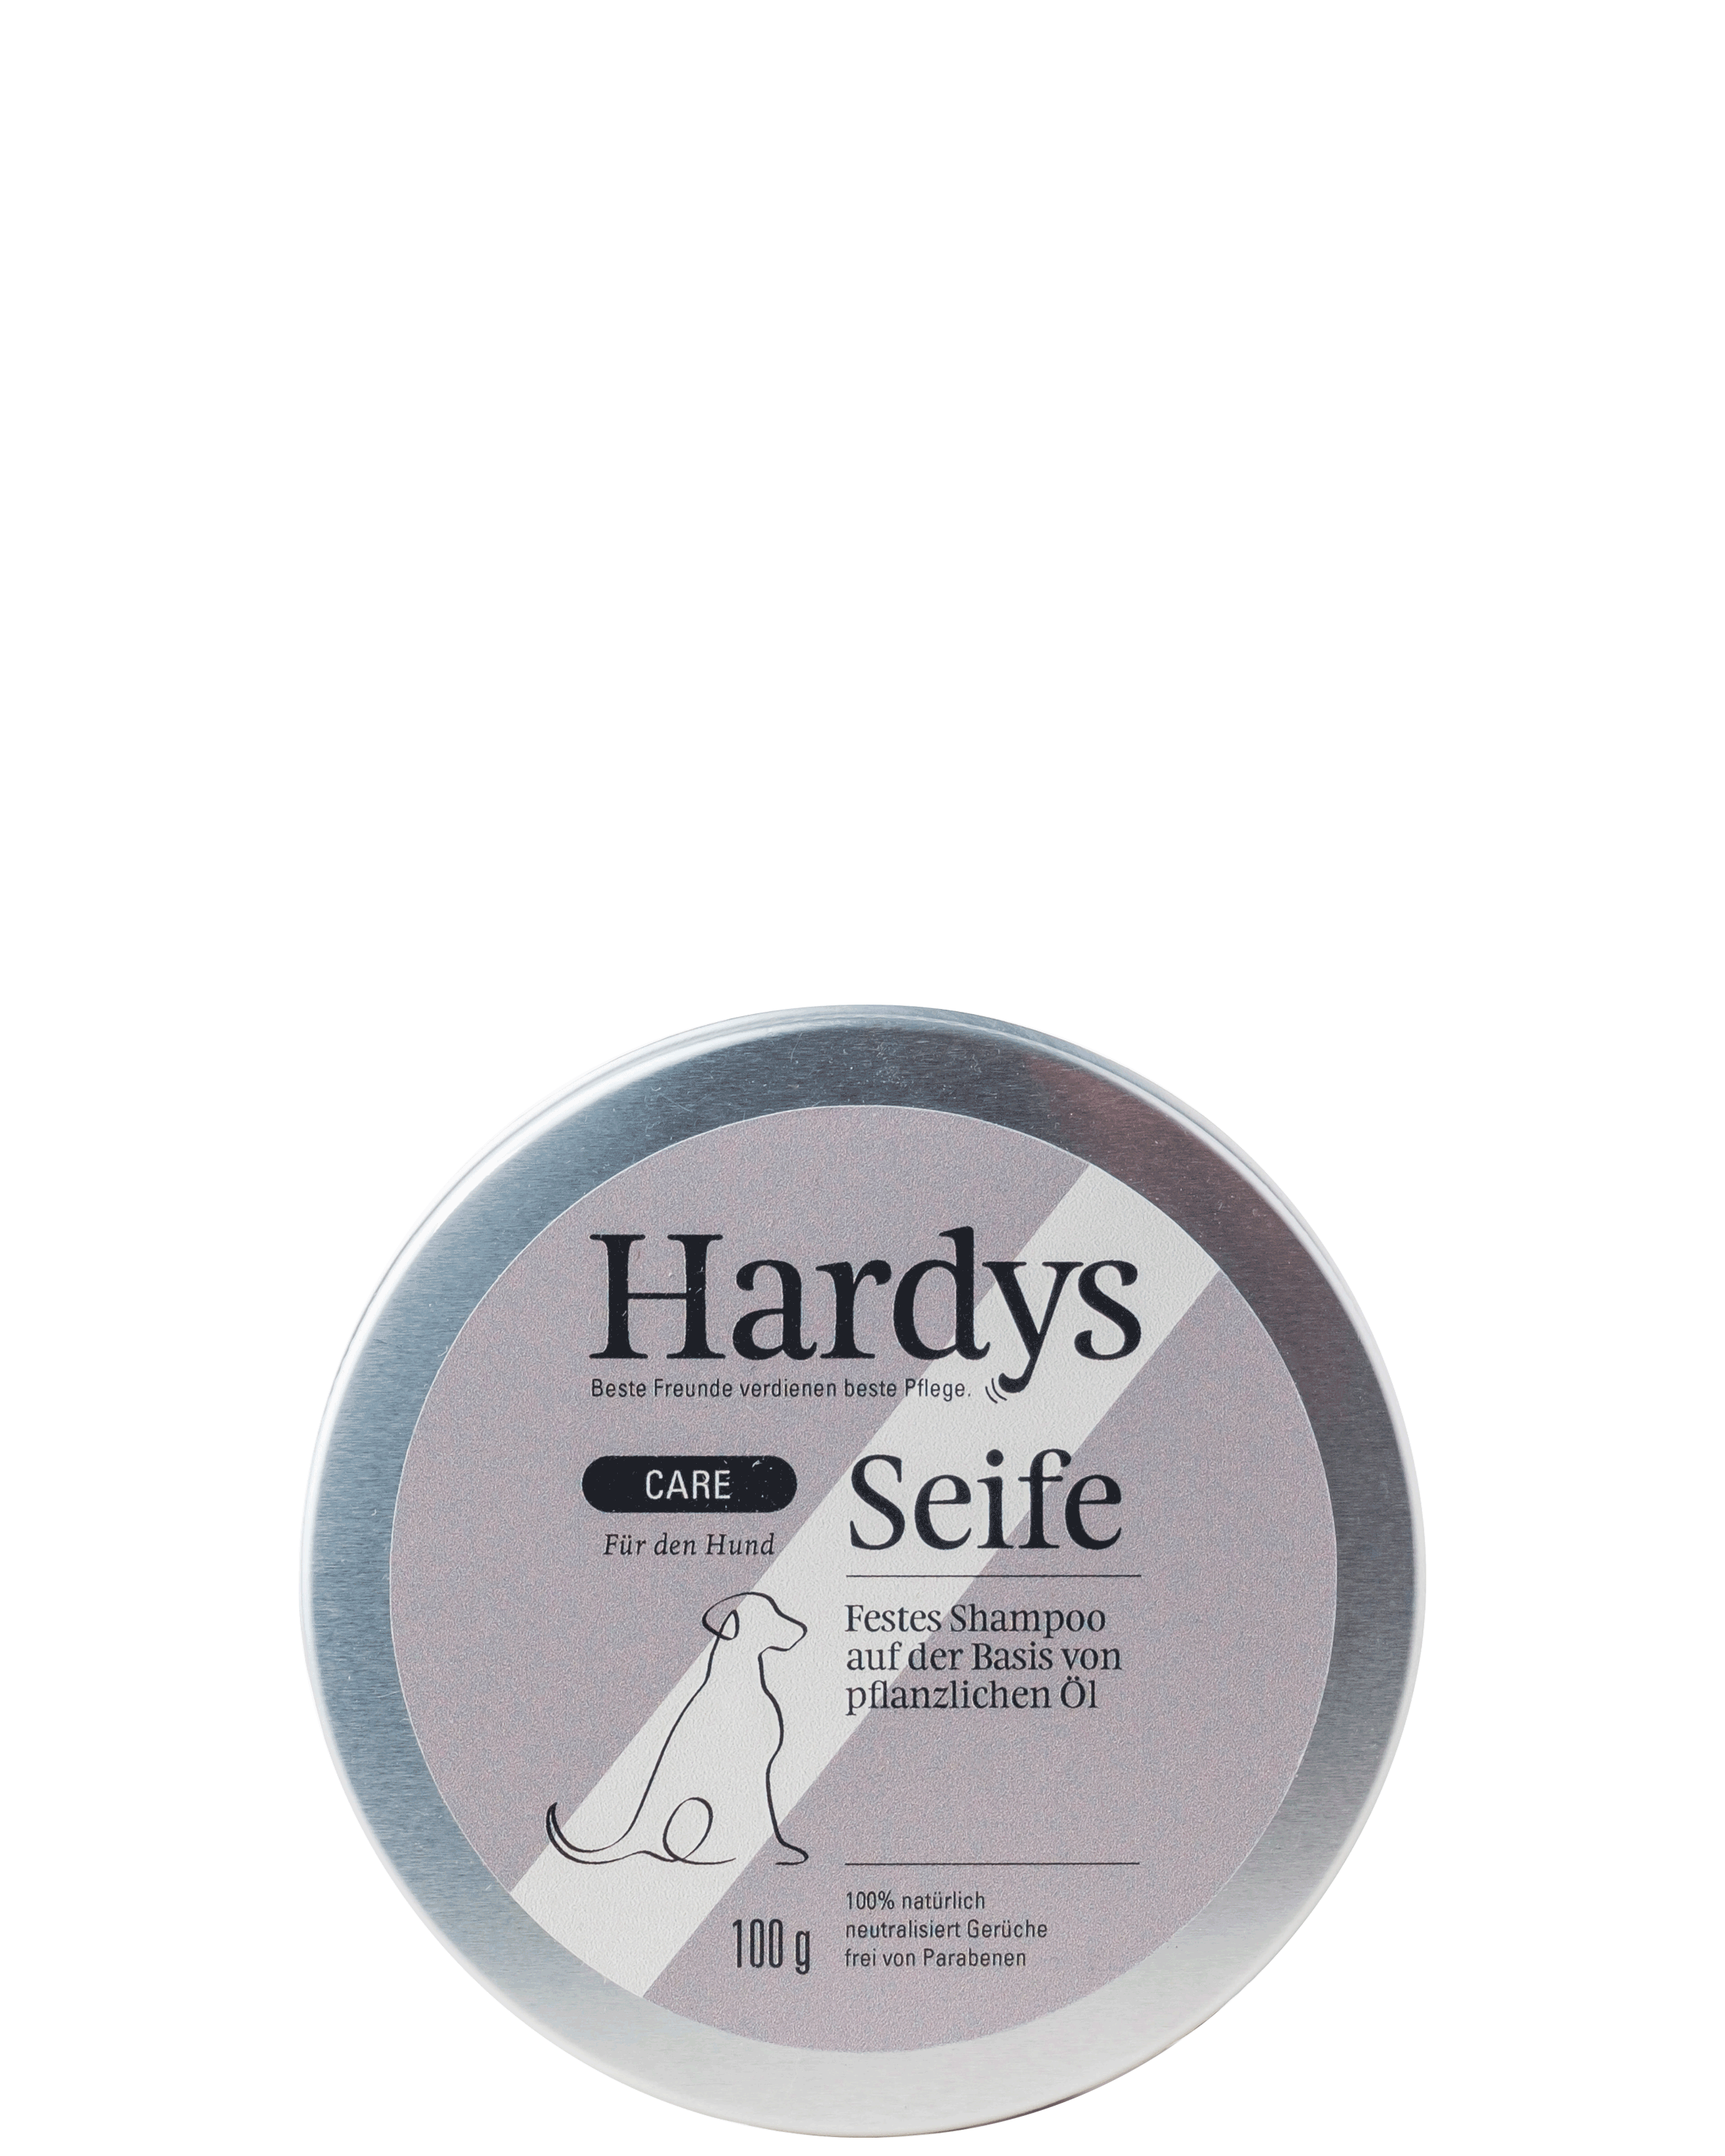 Hardys Care Seife mit pflanzlichen Ölen, 100 g